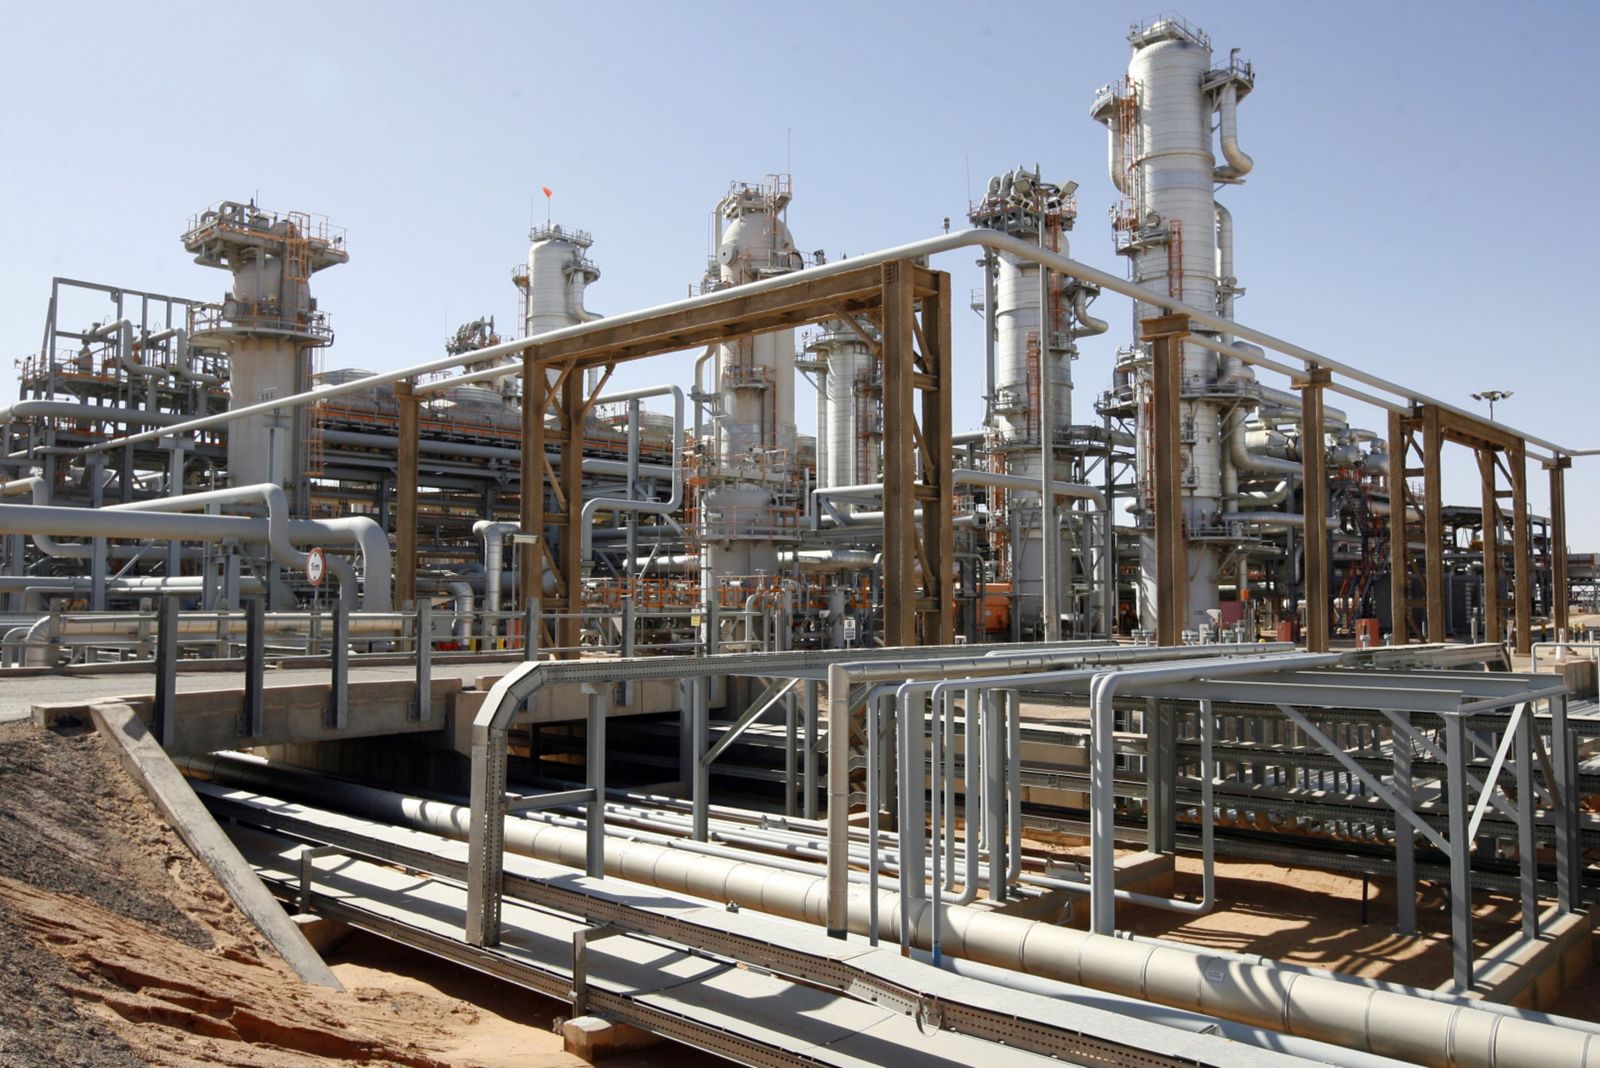 الجزائر تعارض سقف الغاز الأوروبي: الأسواق يجب أن تبقى حرة 